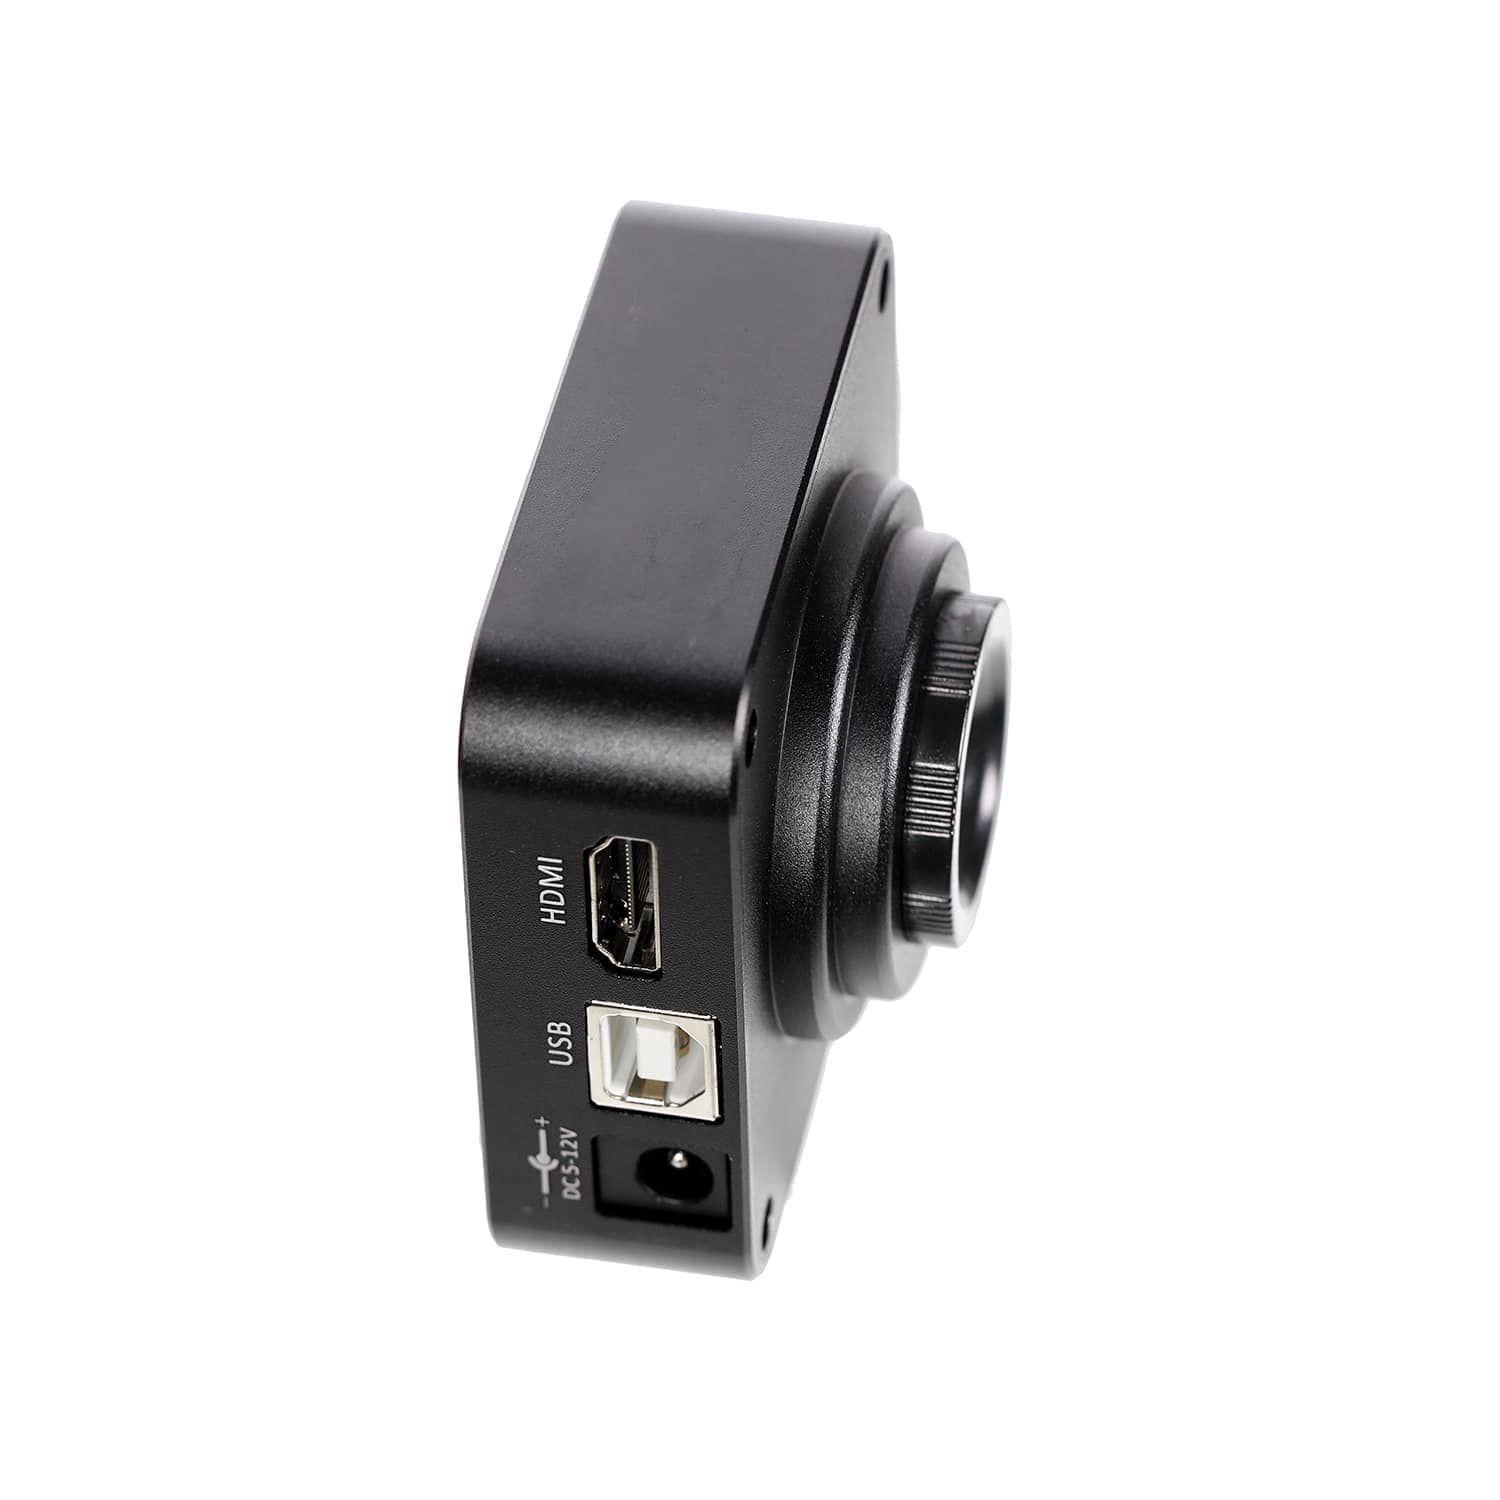 Microscope camera 38MP HDMI USB 2.0